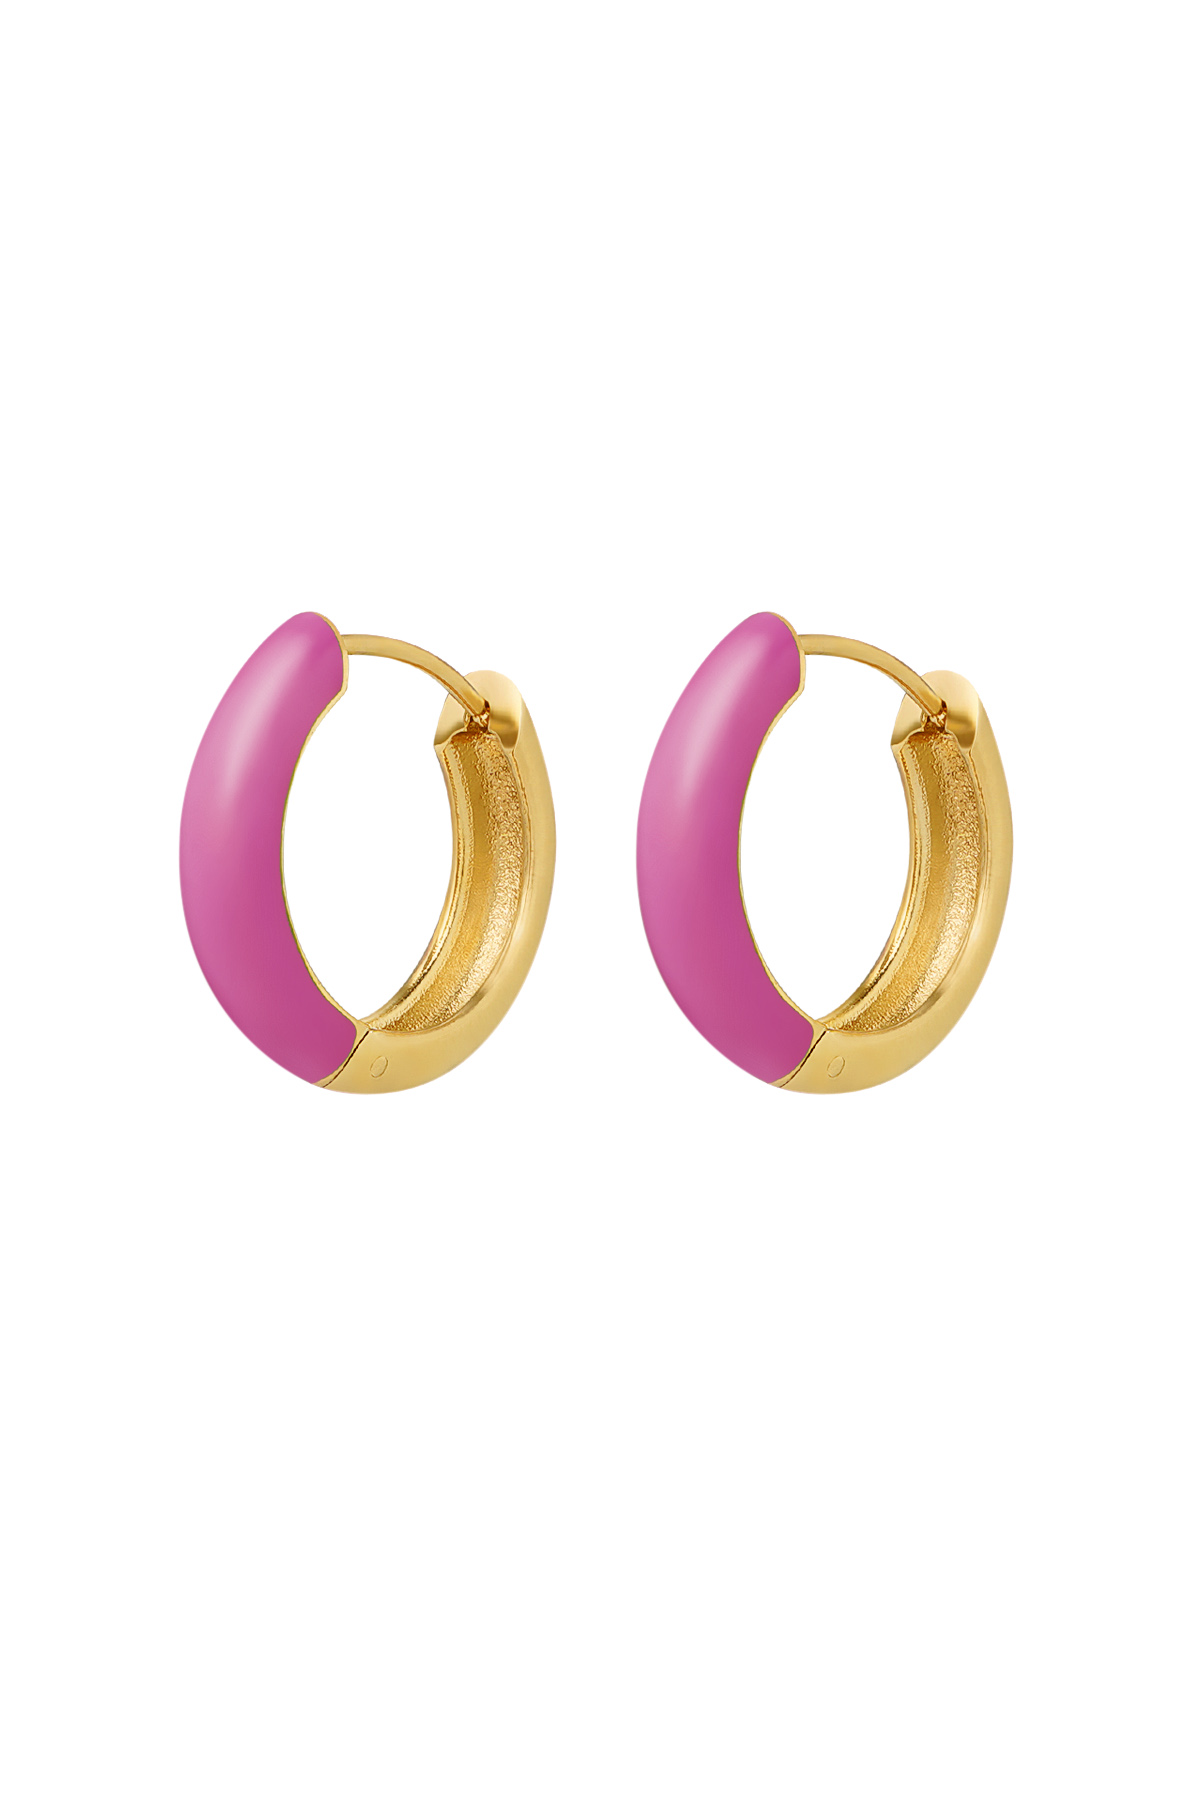 orecchini rosa - oro